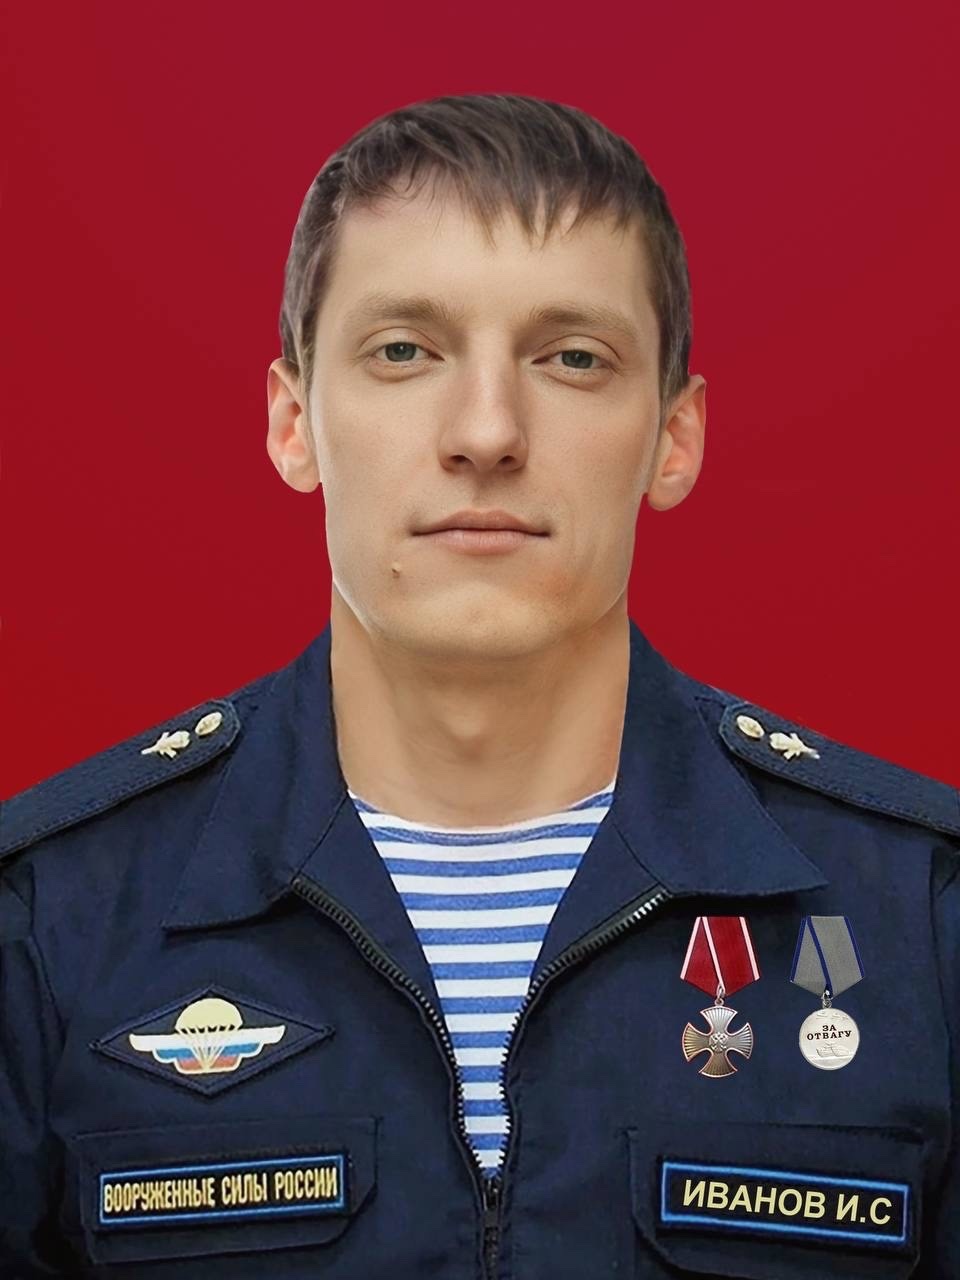 Военнослужащий костромского полка героически погиб в ходе СВО